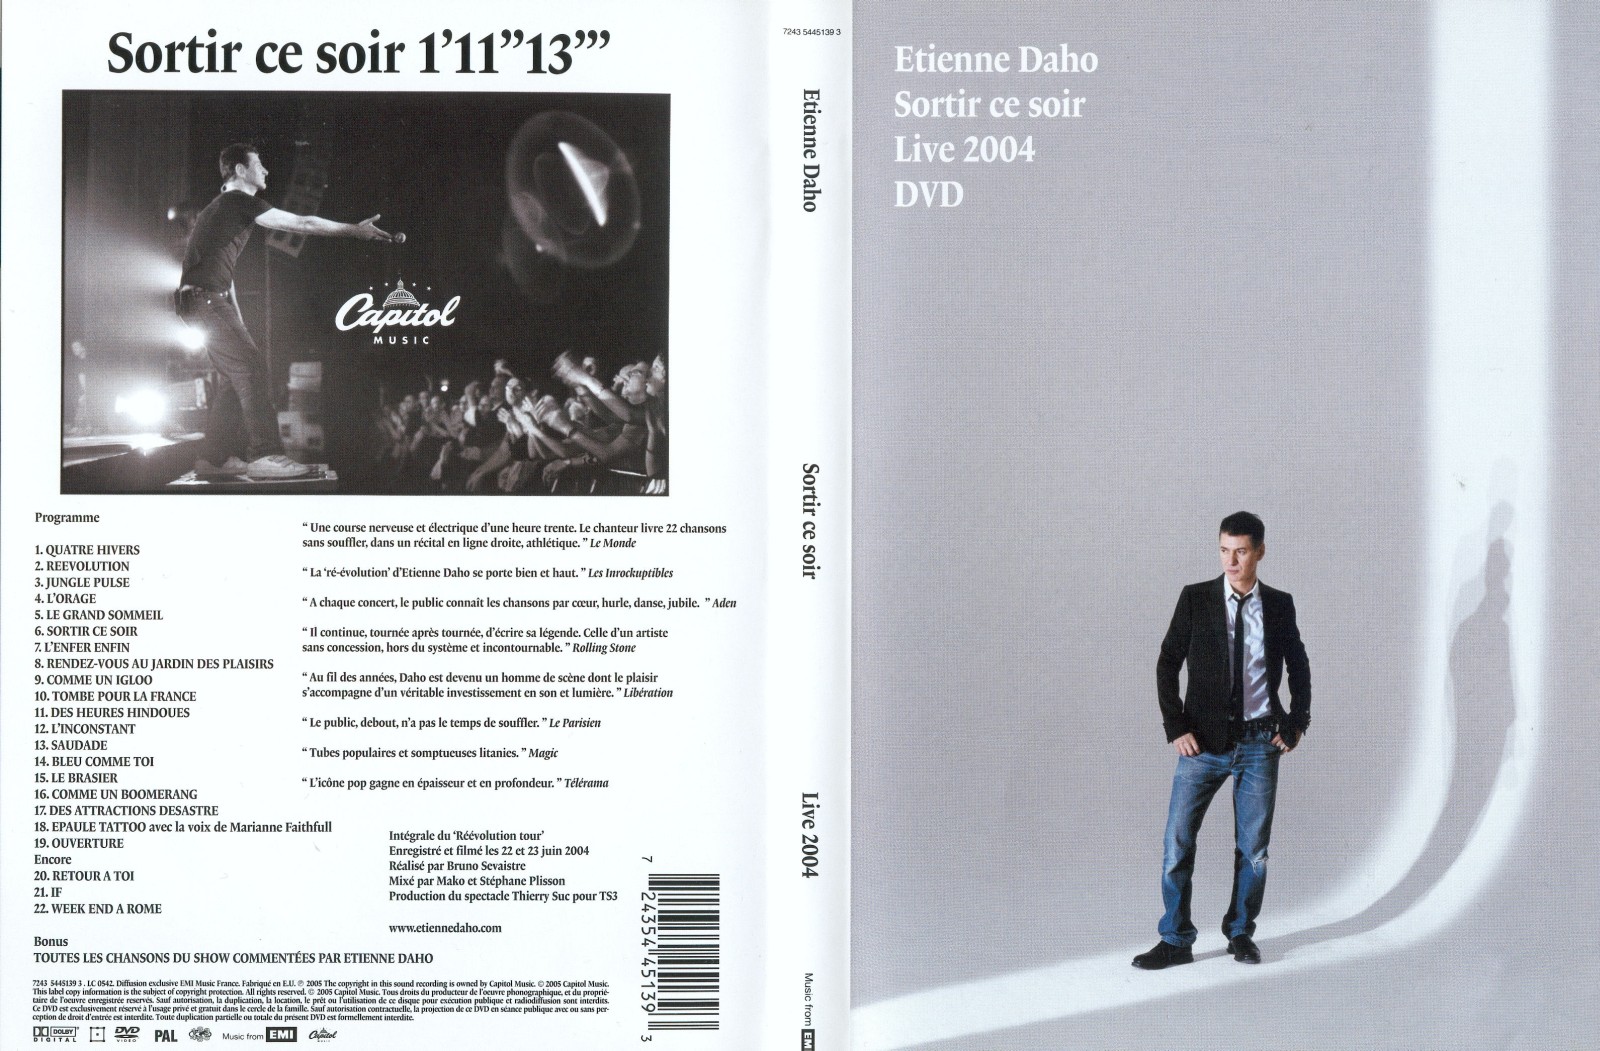 Jaquette DVD Etienne Daho sortir ce soir